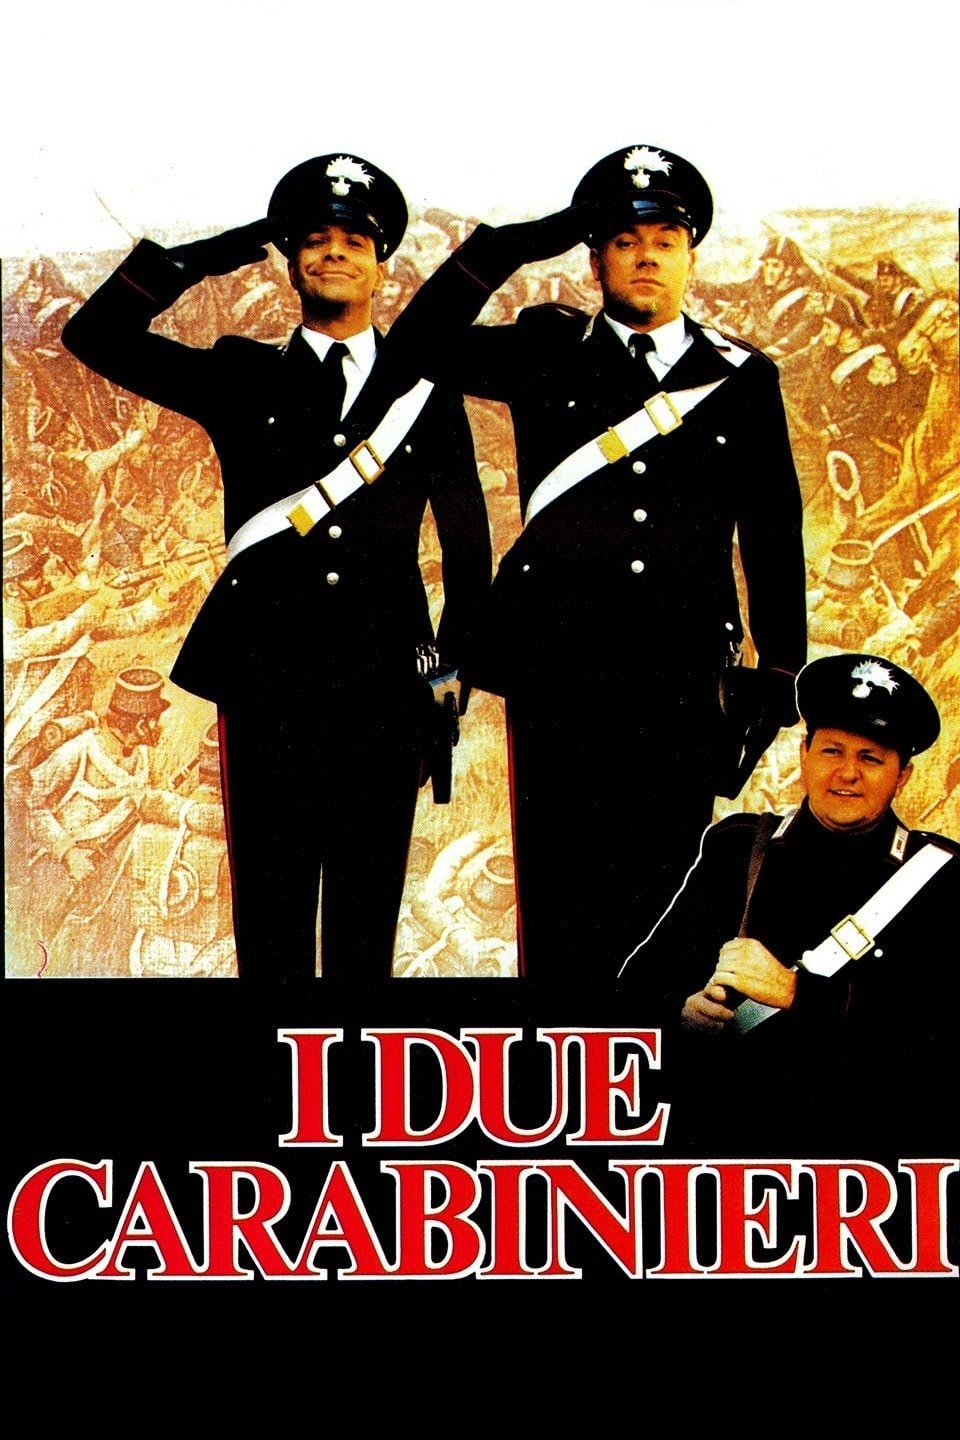 I due carabinieri (1984)